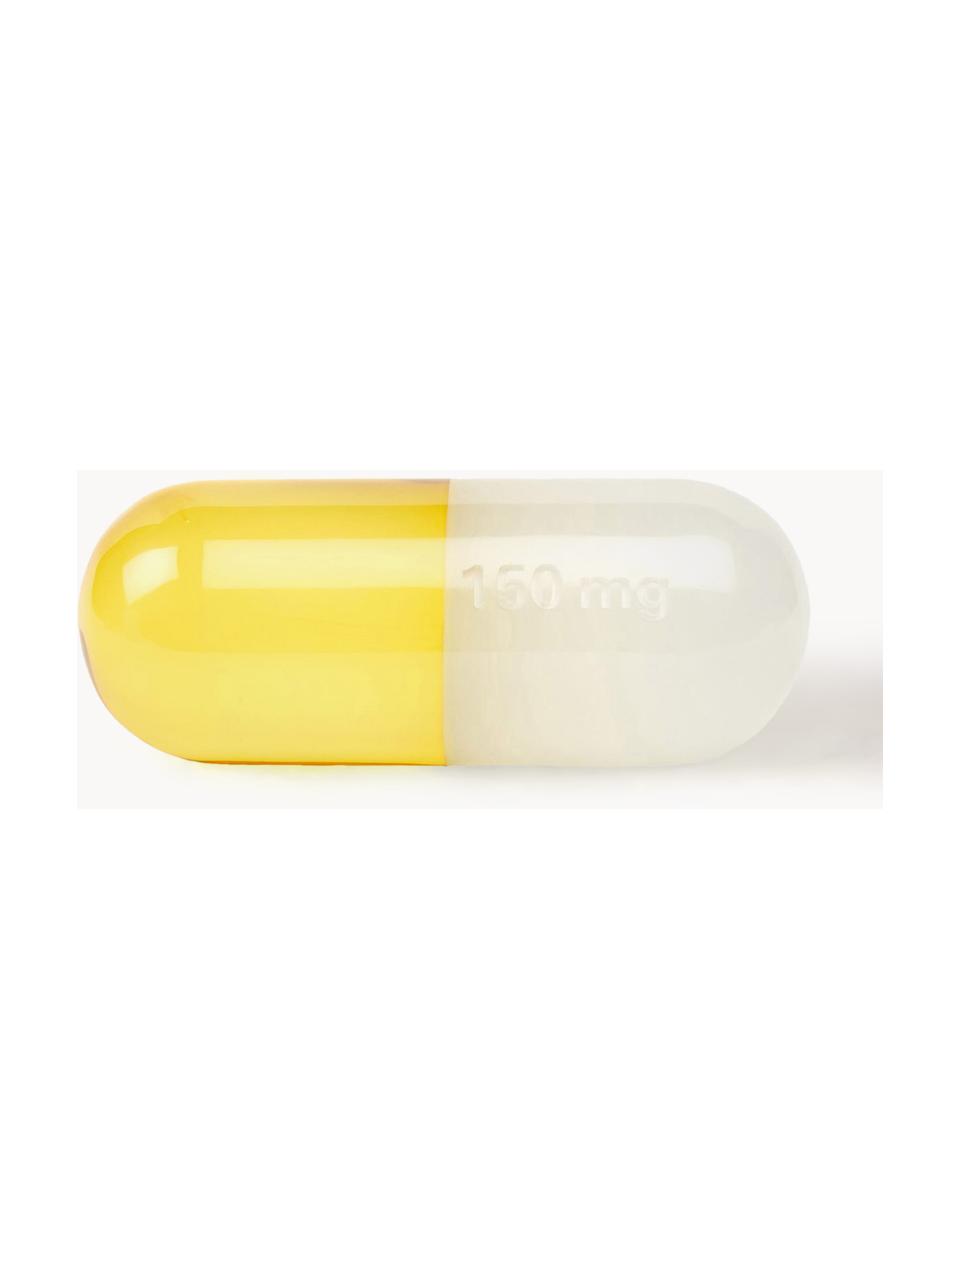 Deko-Objekt Pill, Polyacryl, poliert, Weiss, Zitronengelb, B 17 x H 6 cm